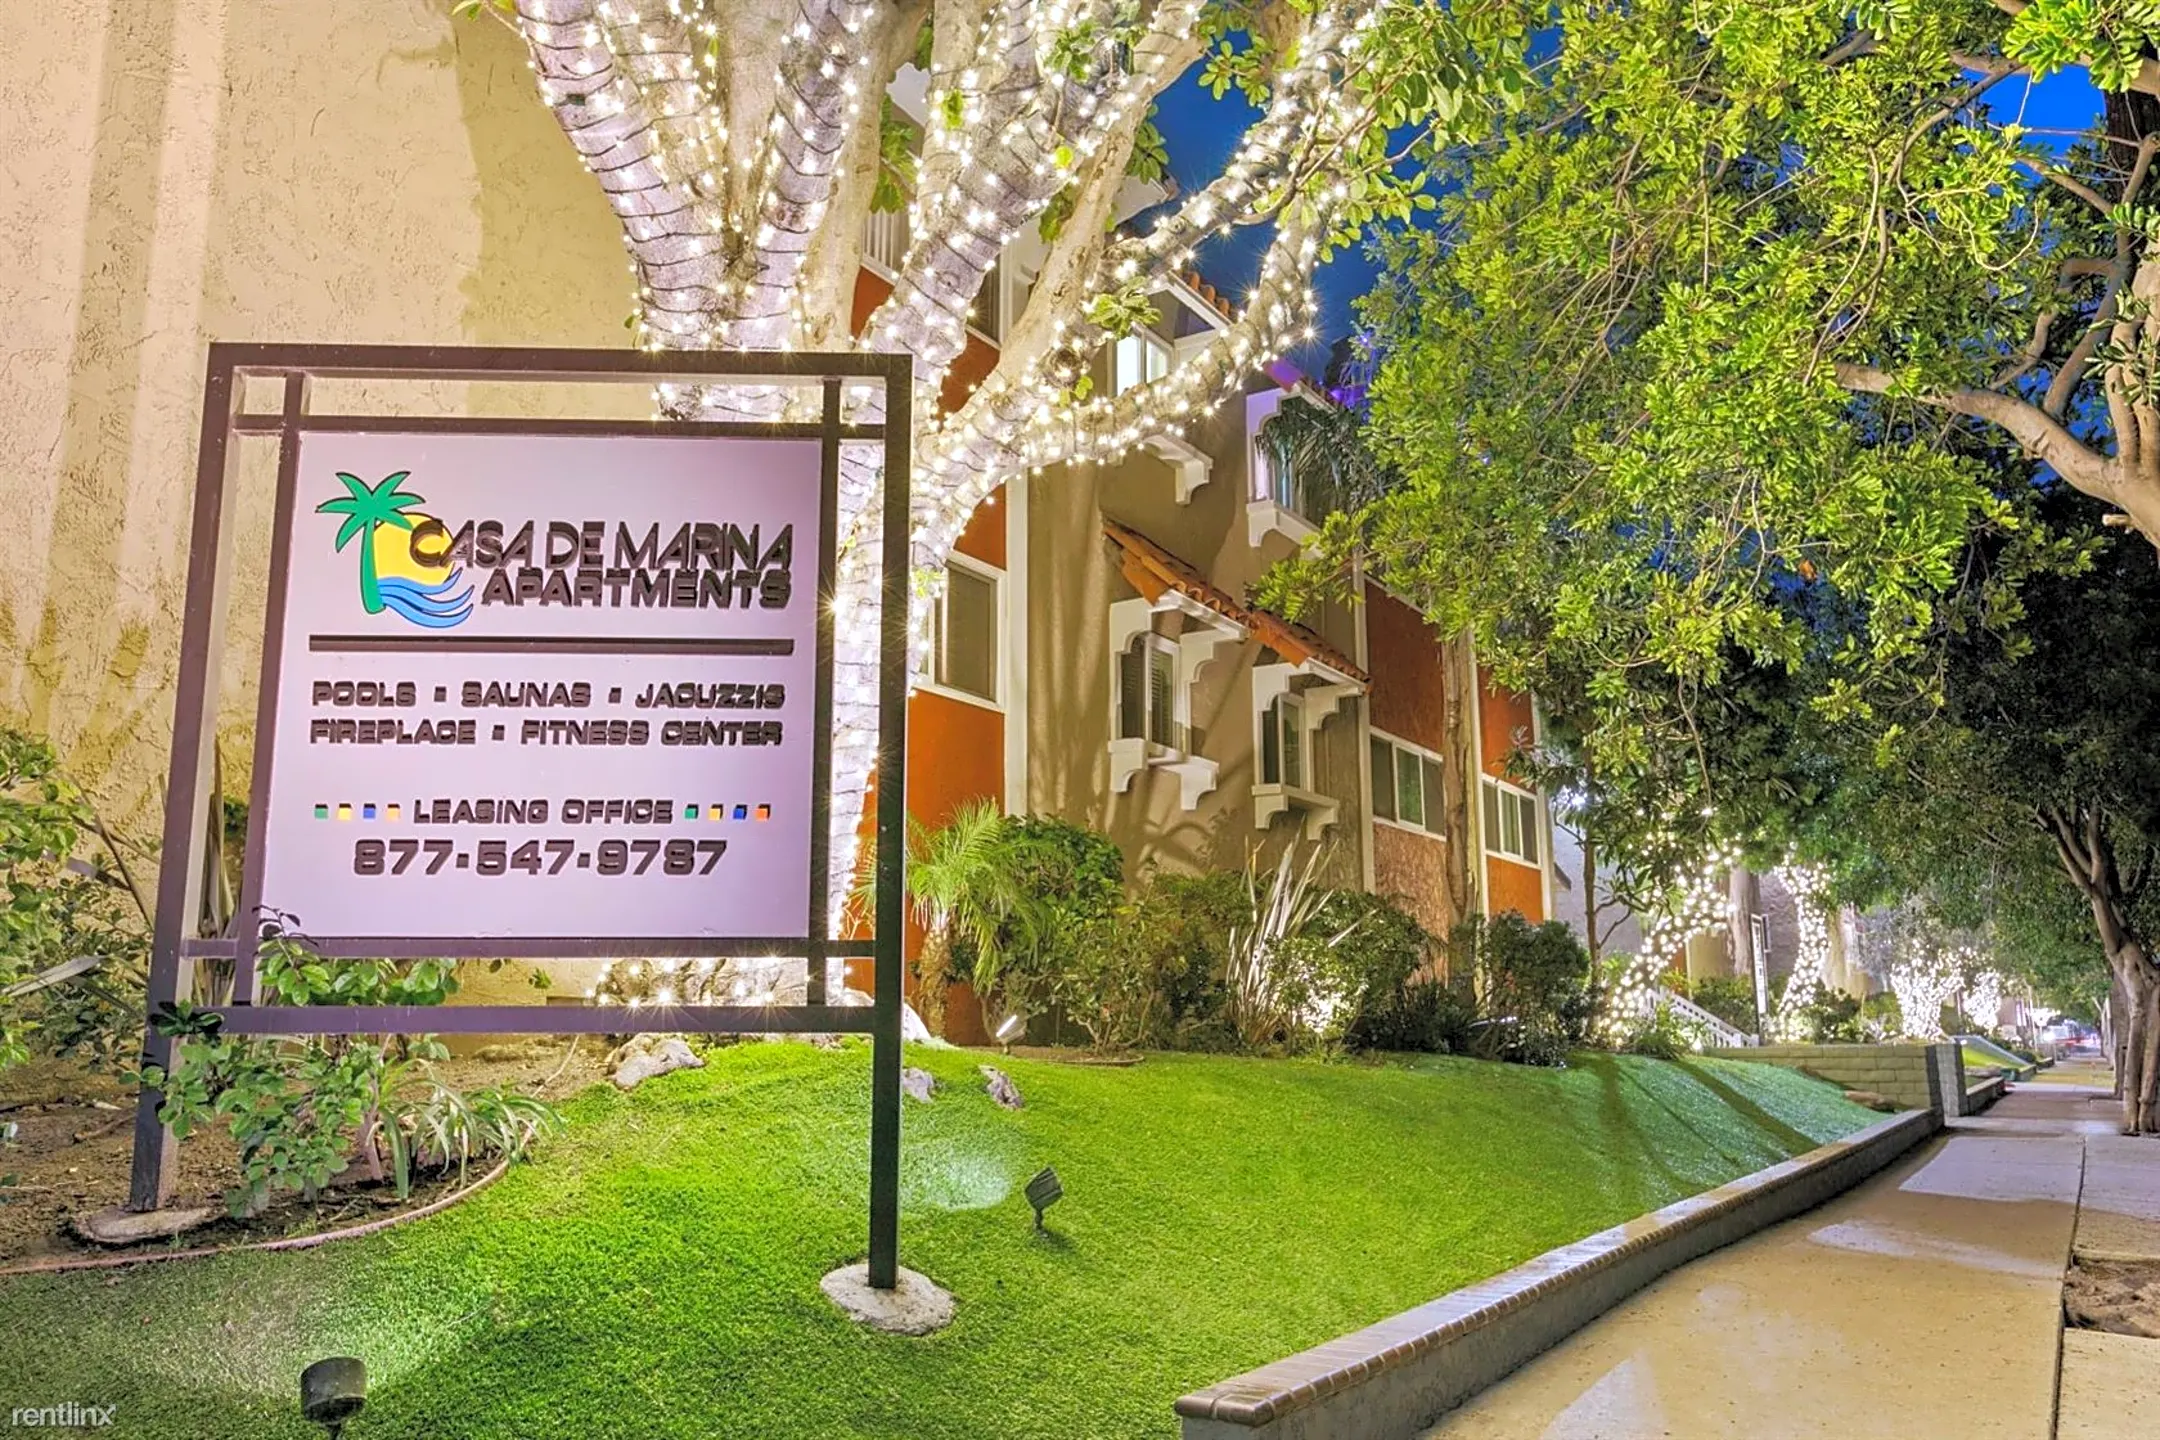 Casa De Marina Apartments Apartments - Los Angeles, CA 90066